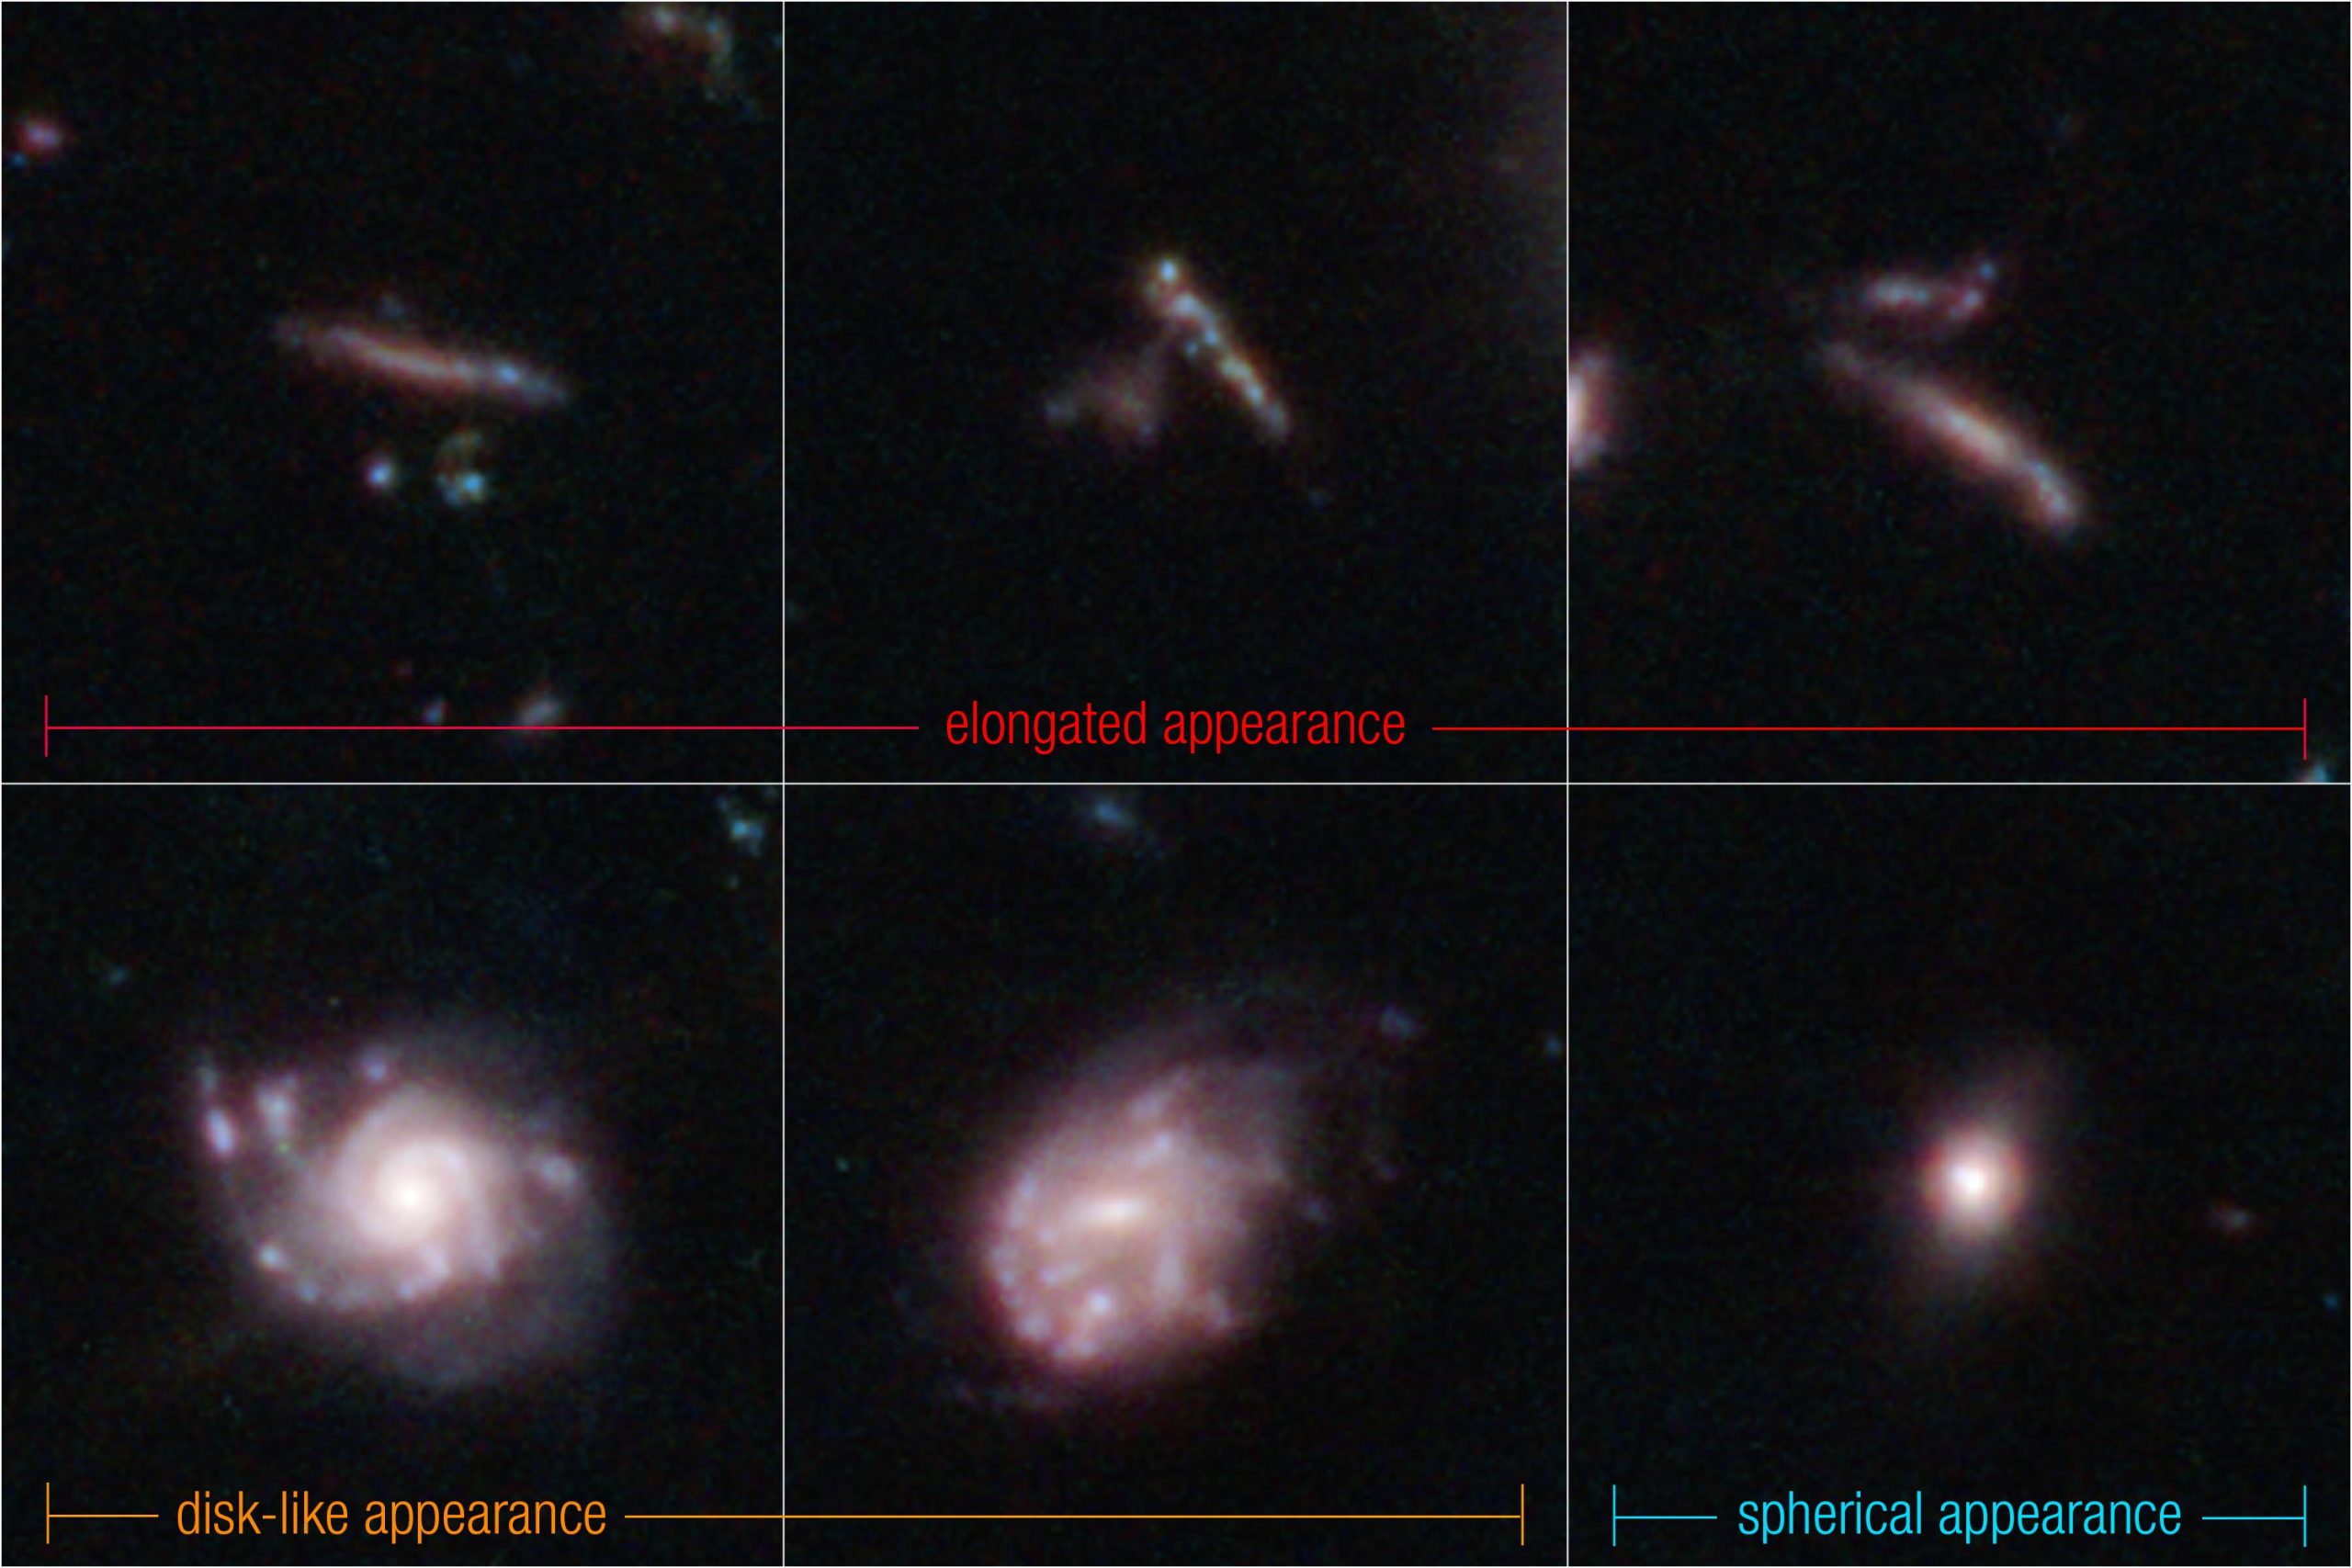 Daugelis ankstyvųjų galaktikų atrodė kaip baseino makaronai ir banglentės